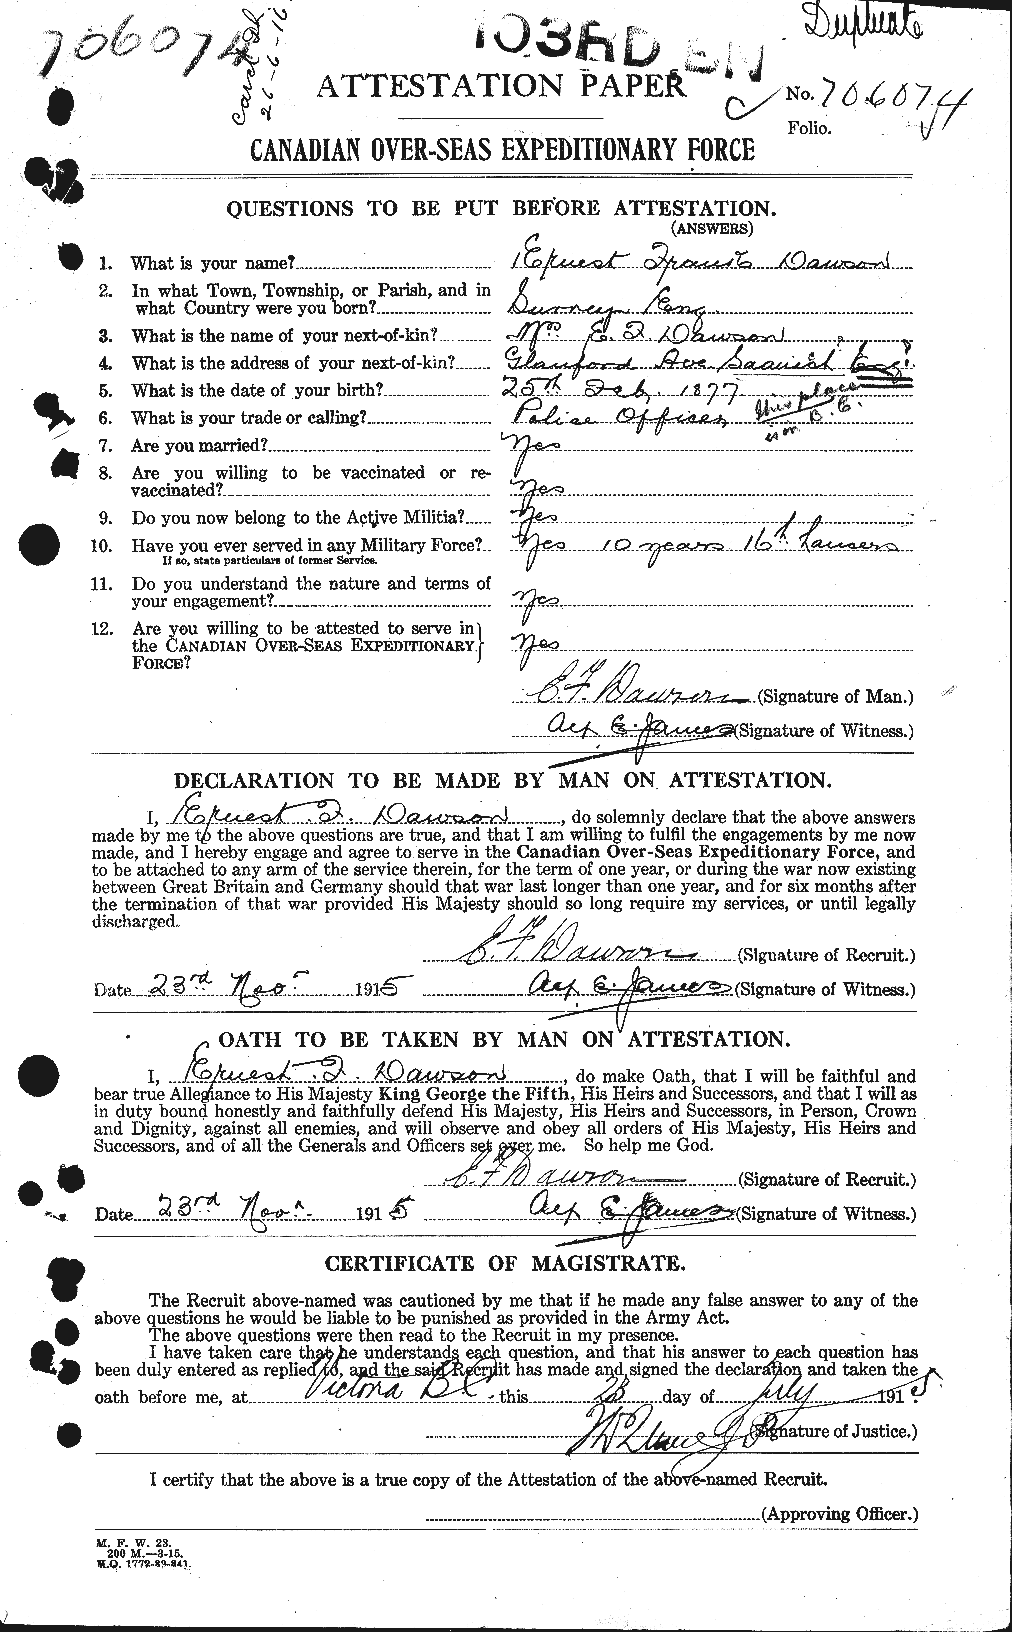 Dossiers du Personnel de la Première Guerre mondiale - CEC 285140a